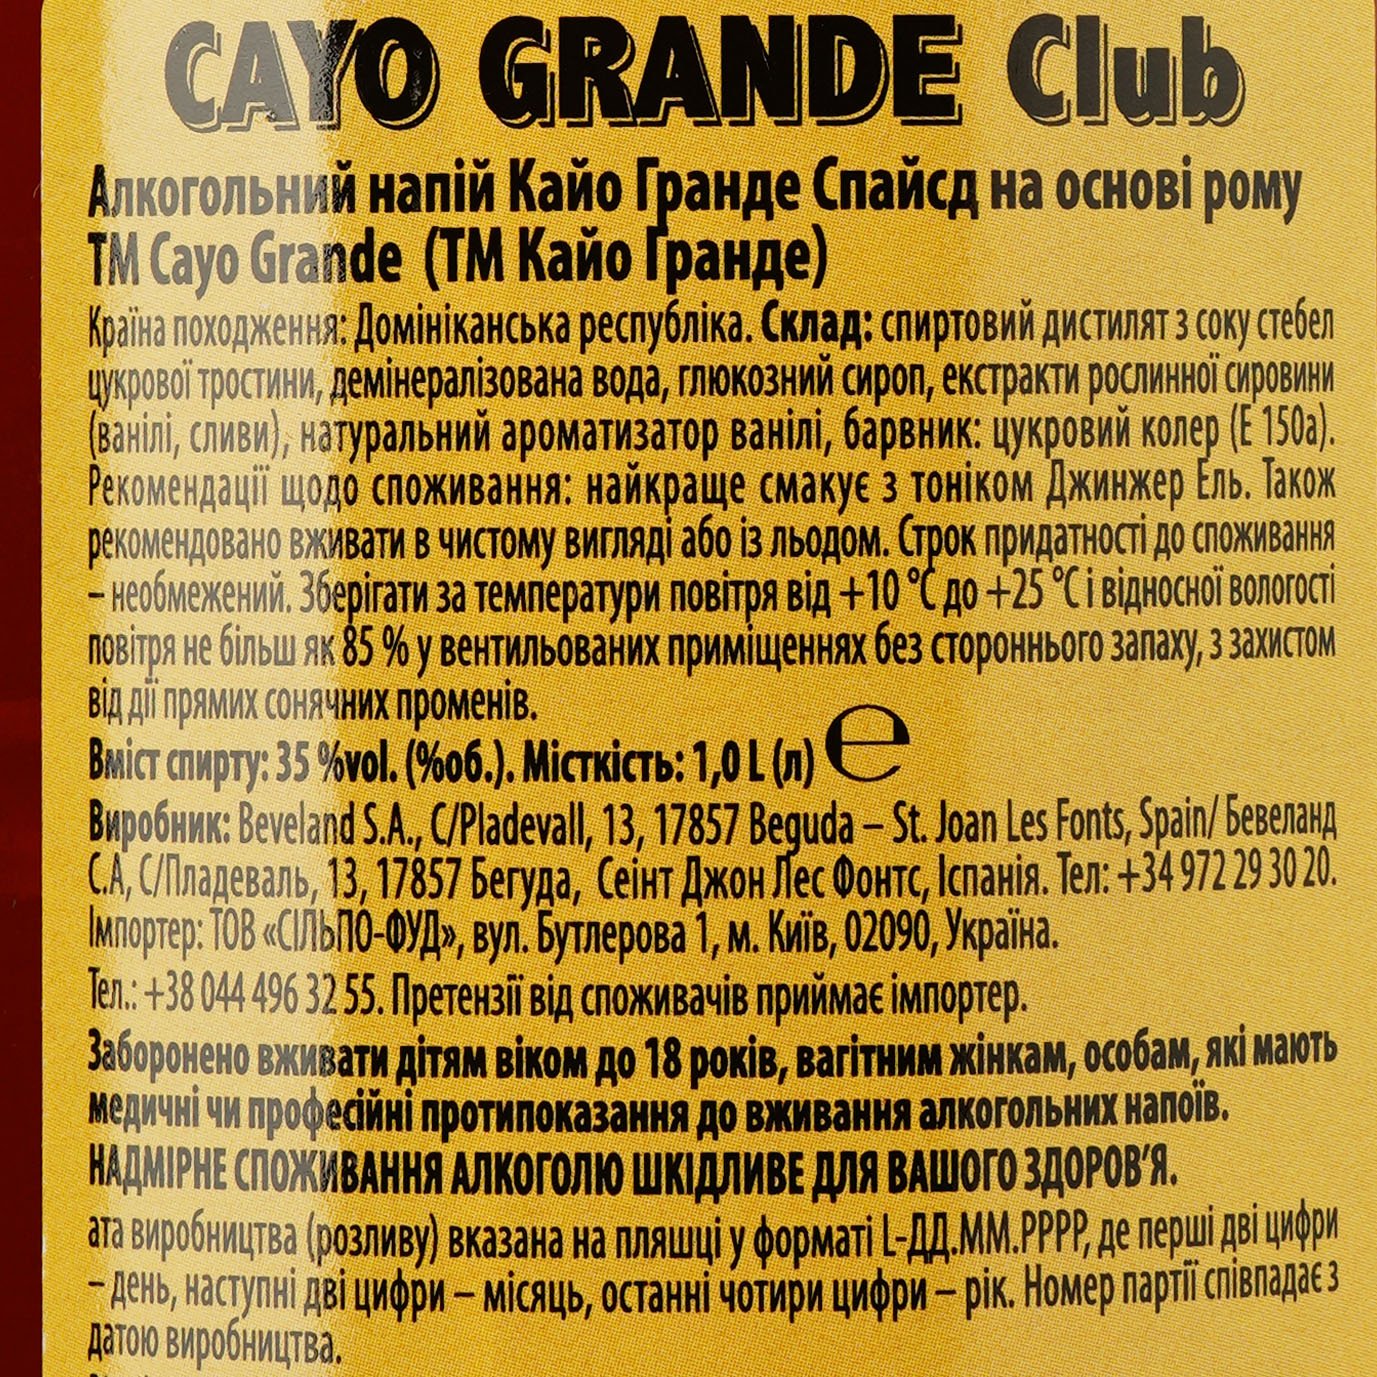 Ромовий напій Cayo Grande Club Spiced, 35%, 1 л (853530) - фото 3